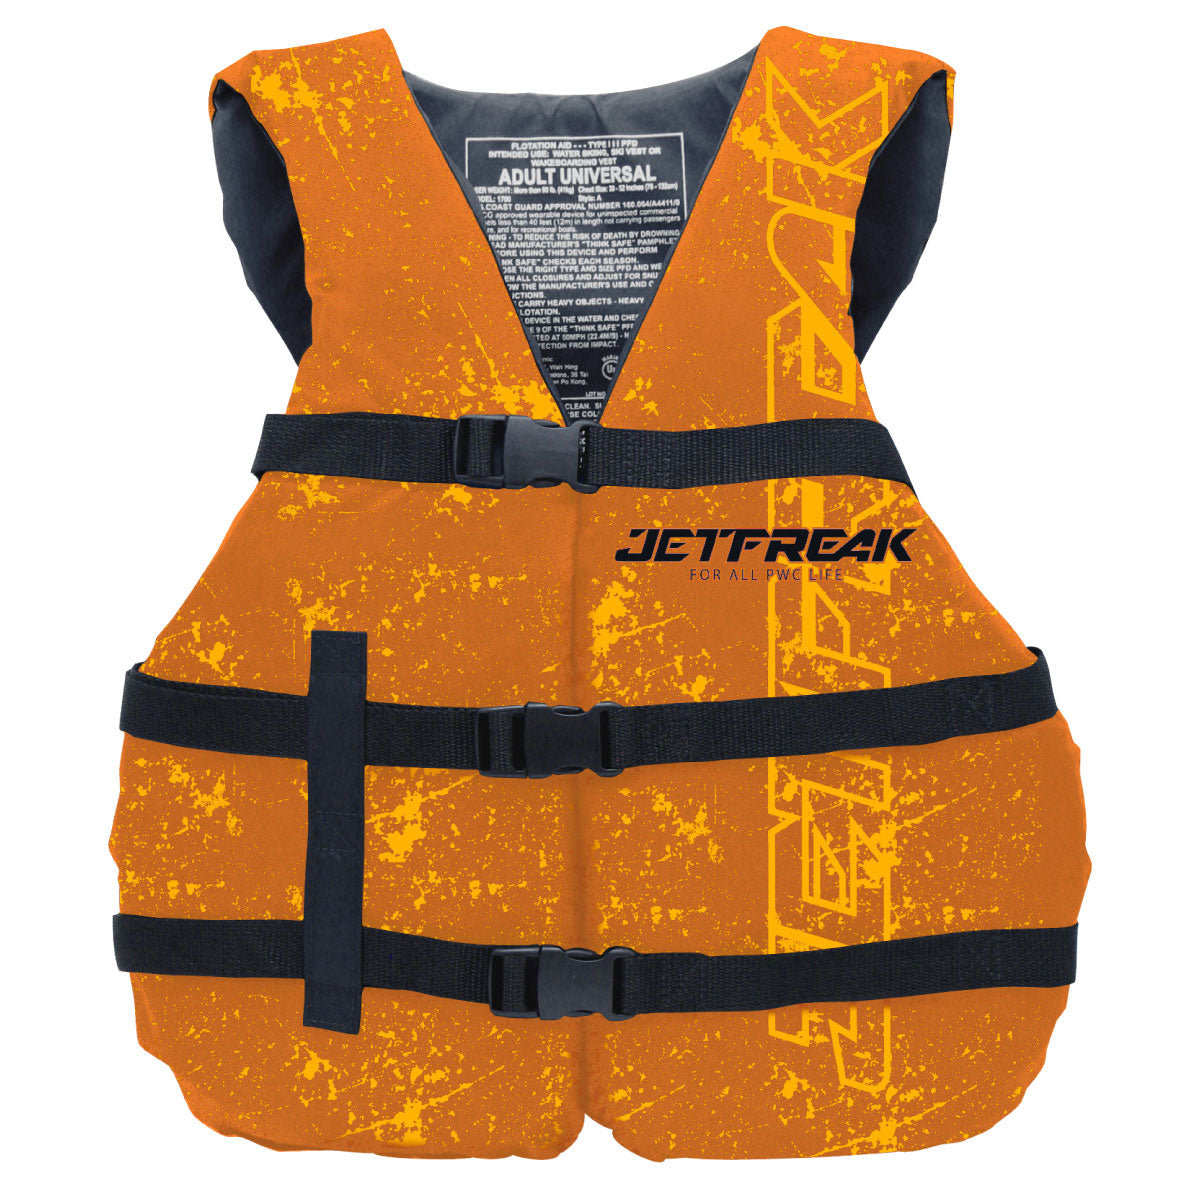 JETFREAK ライフジャケット BATTEREFLY VEST 簡易タイプ 救命胴衣 　FLV-2103